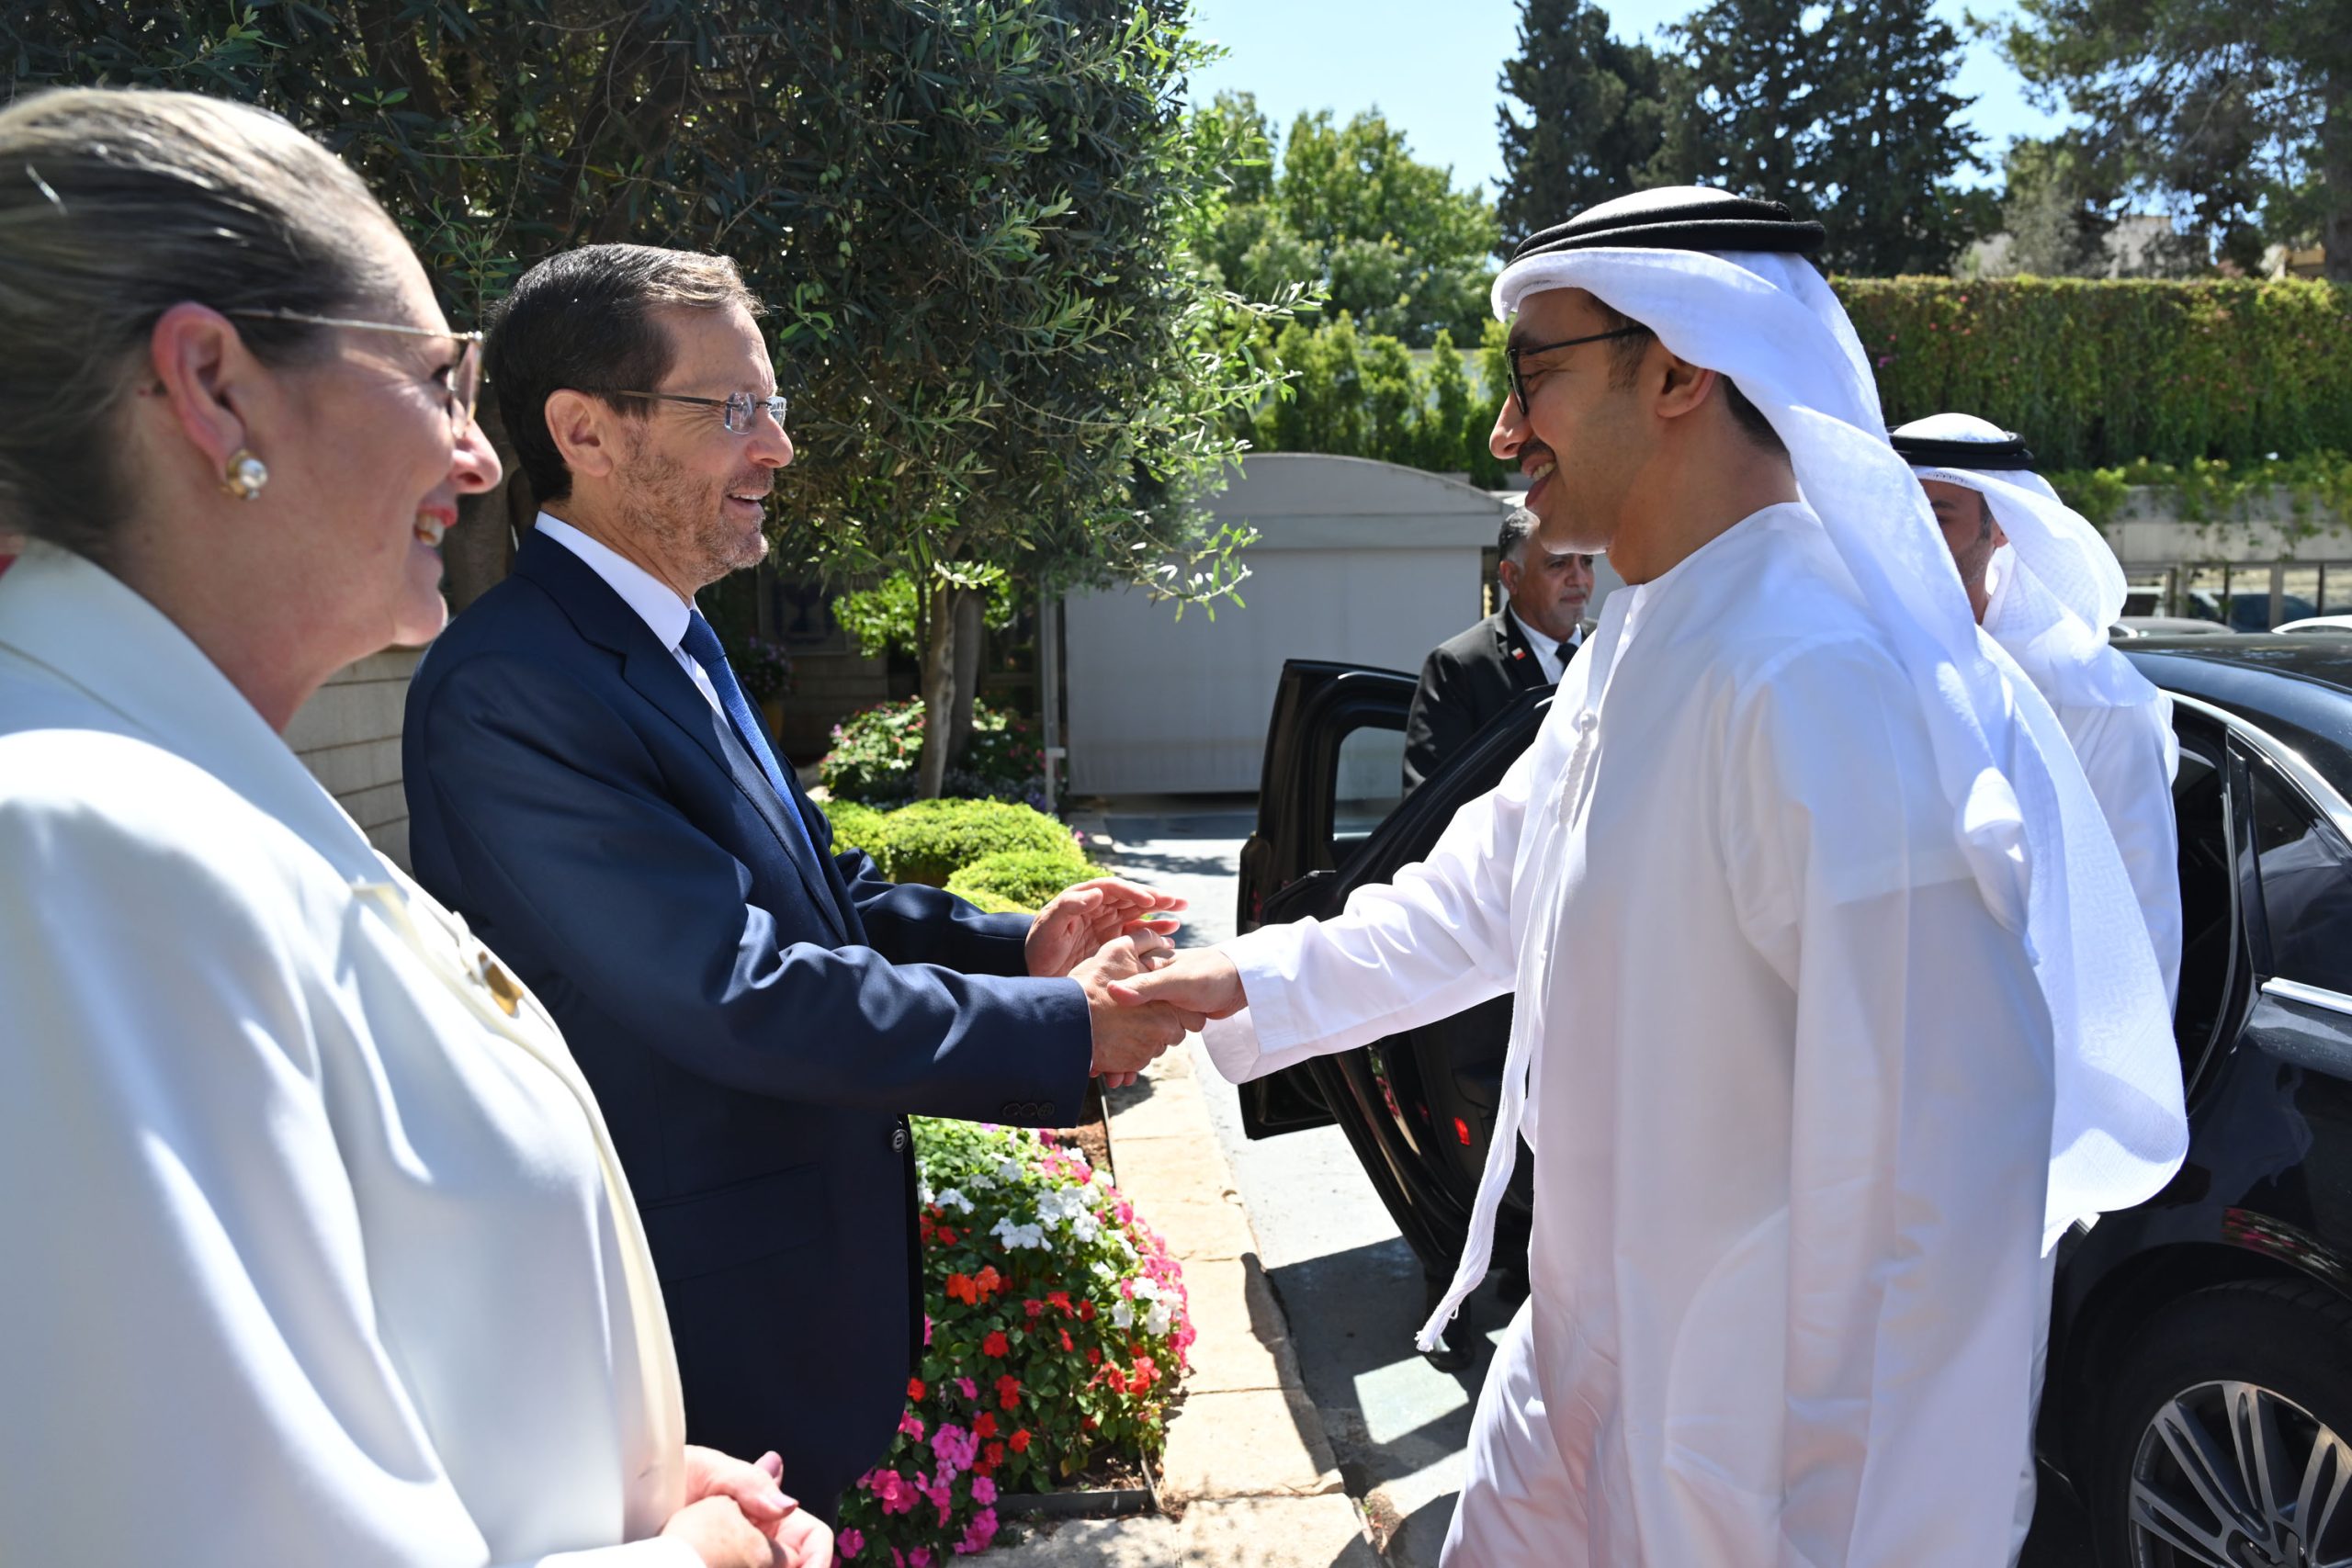 נשיא המדינה קיבל את פניו של שר החוץ של איחוד האמירויות, השייח׳ עבדאללה בן זאיד אאל נהיאן